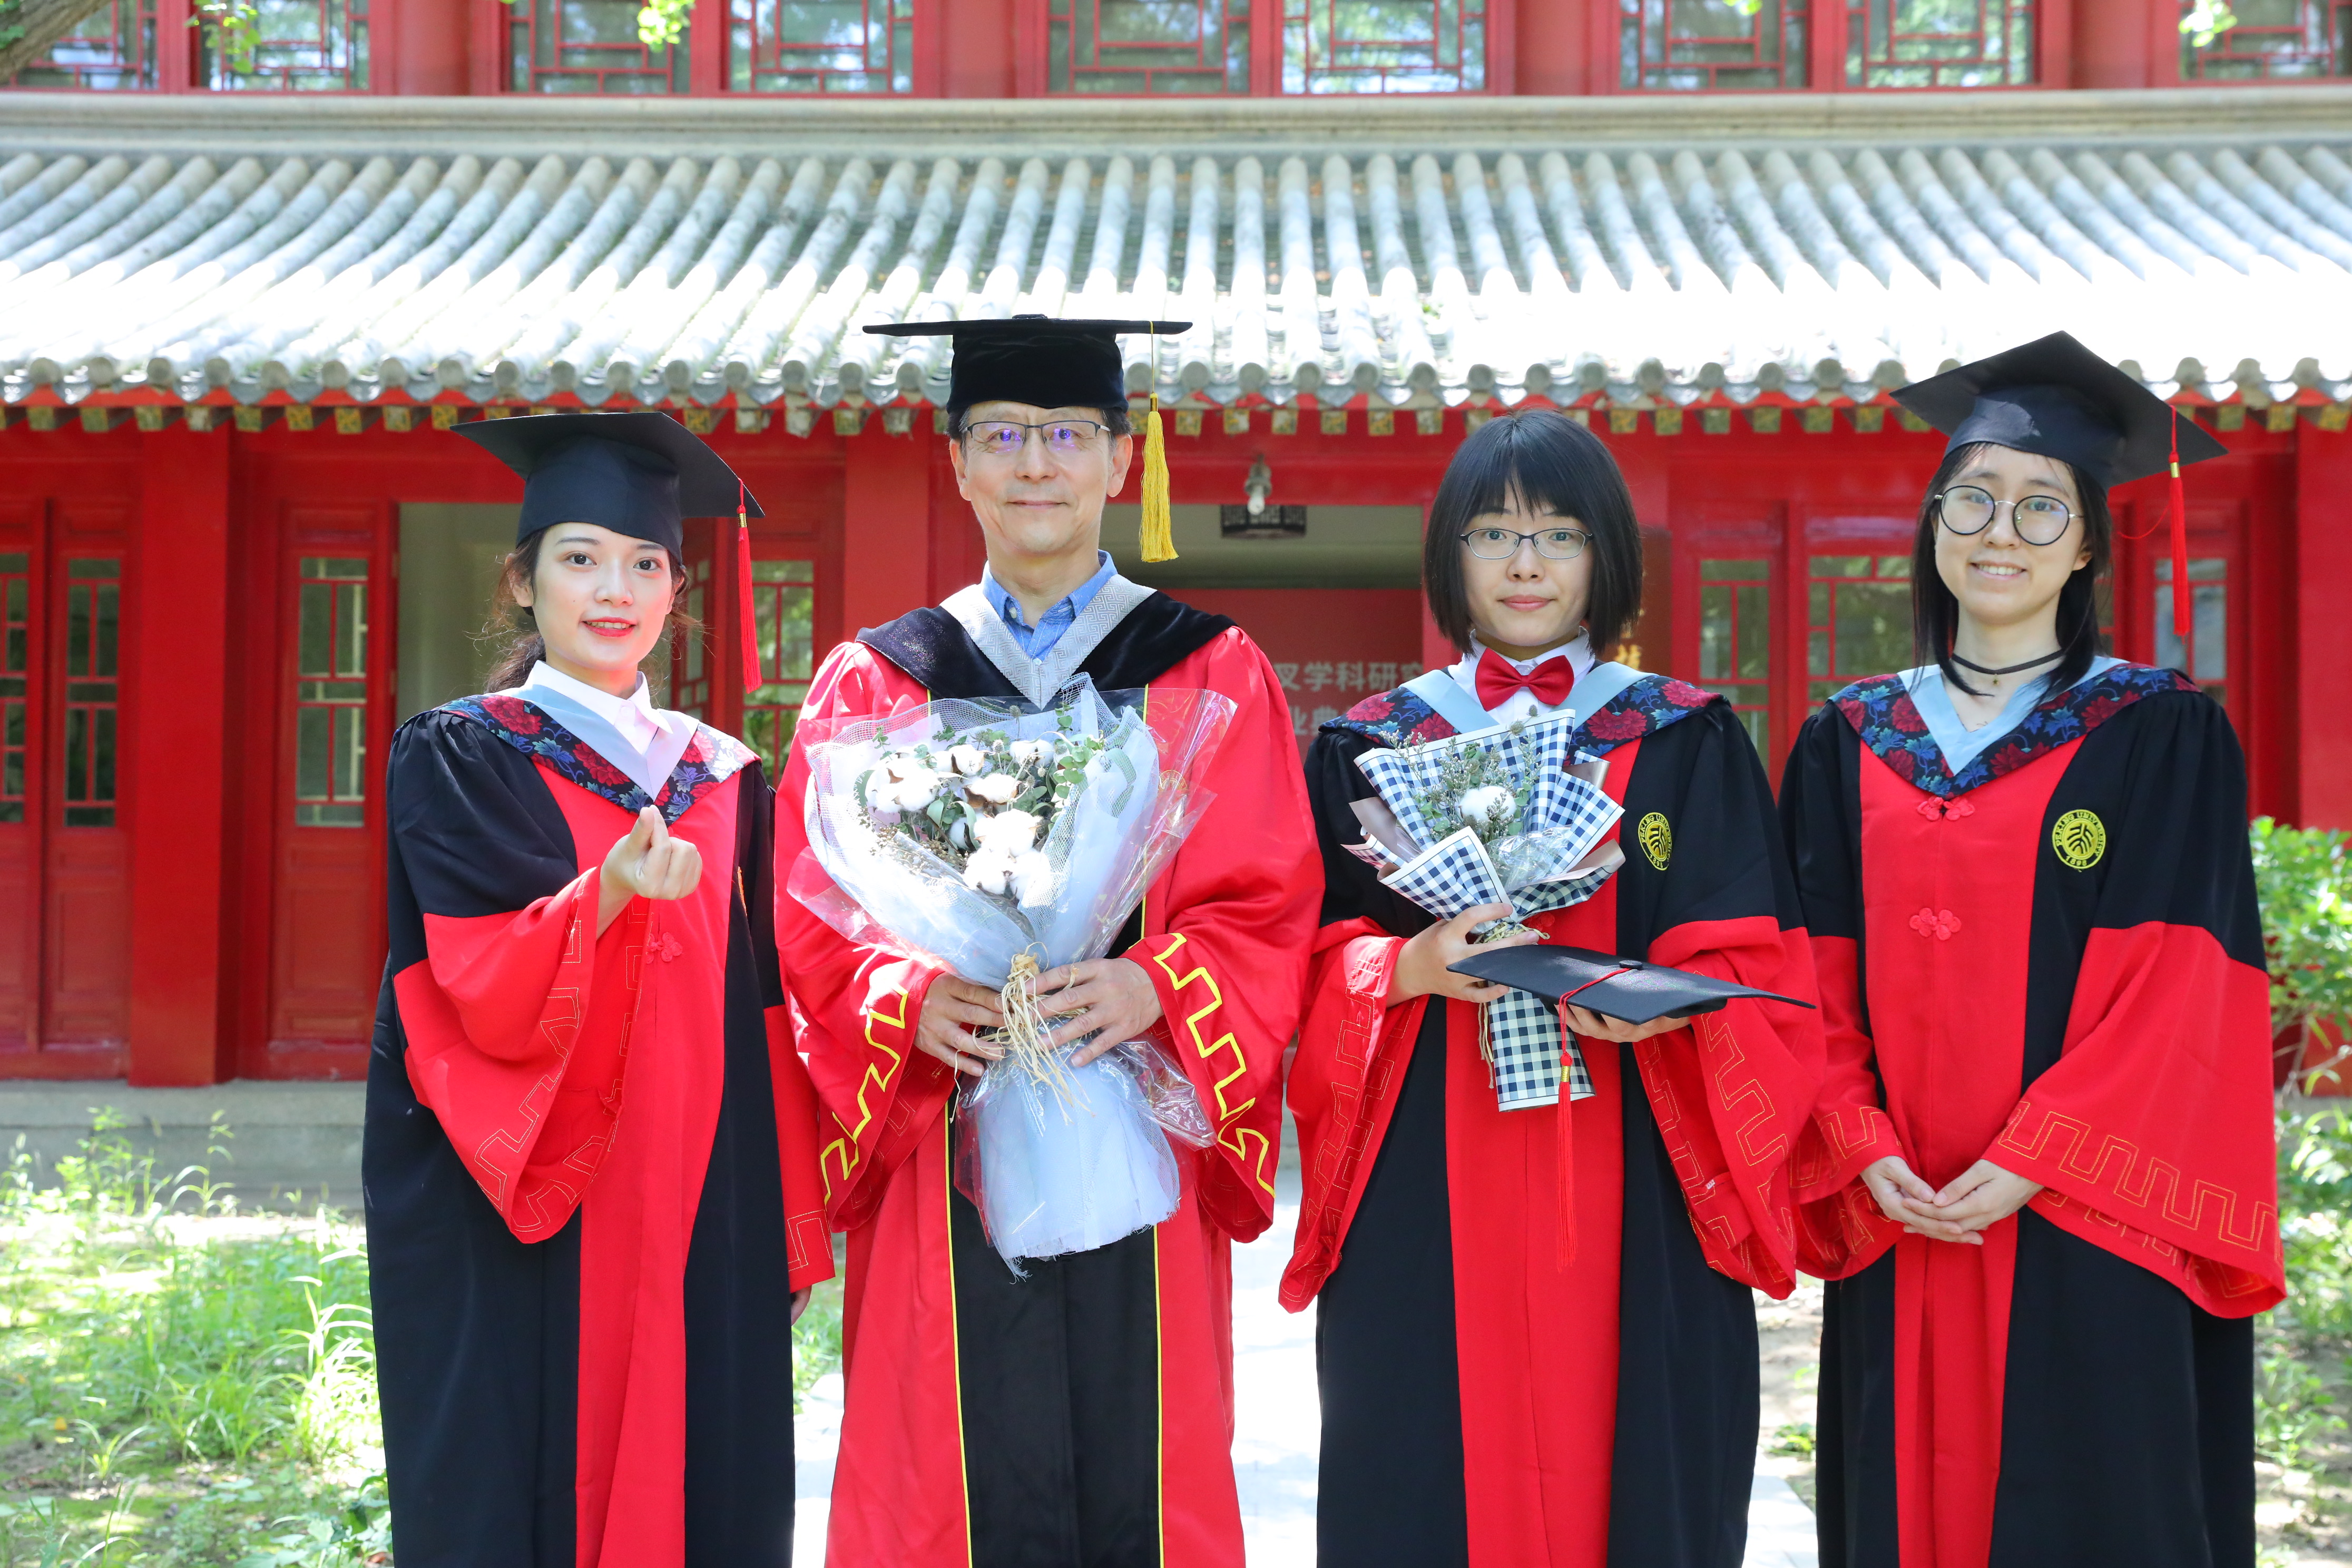 Congratulations to Tian Binghui, Ren Huixia, and Li Yanjun for graduation!